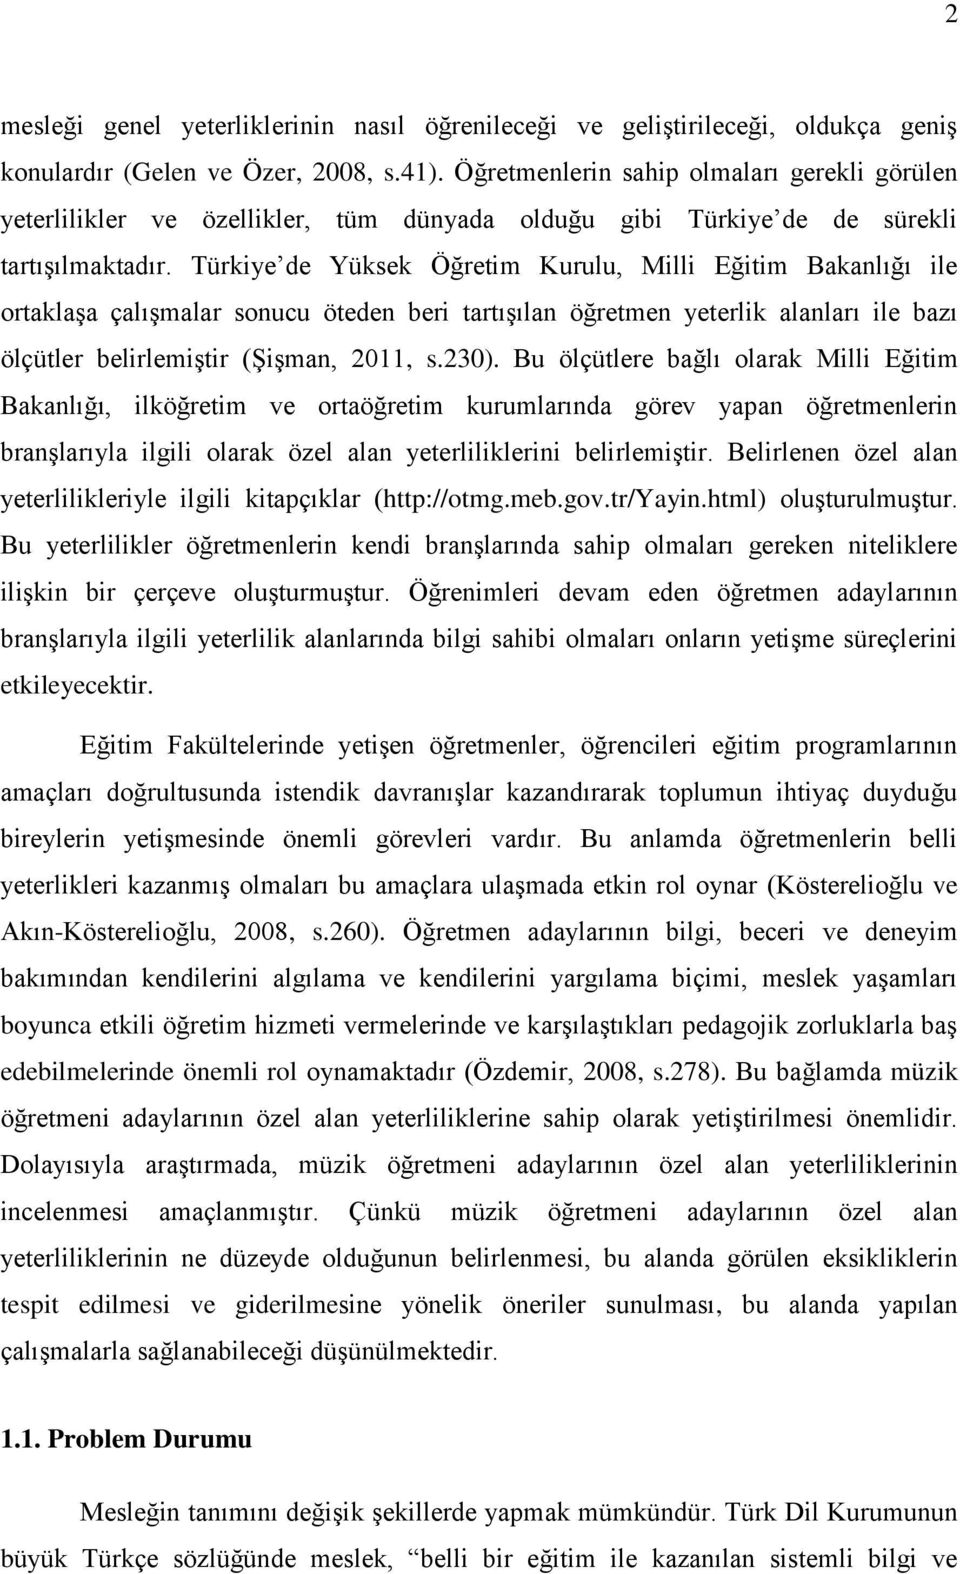 Türkiye de Yüksek Öğretim Kurulu, Milli Eğitim Bakanlığı ile ortaklaşa çalışmalar sonucu öteden beri tartışılan öğretmen yeterlik alanları ile bazı ölçütler belirlemiştir (Şişman, 2011, s.230).